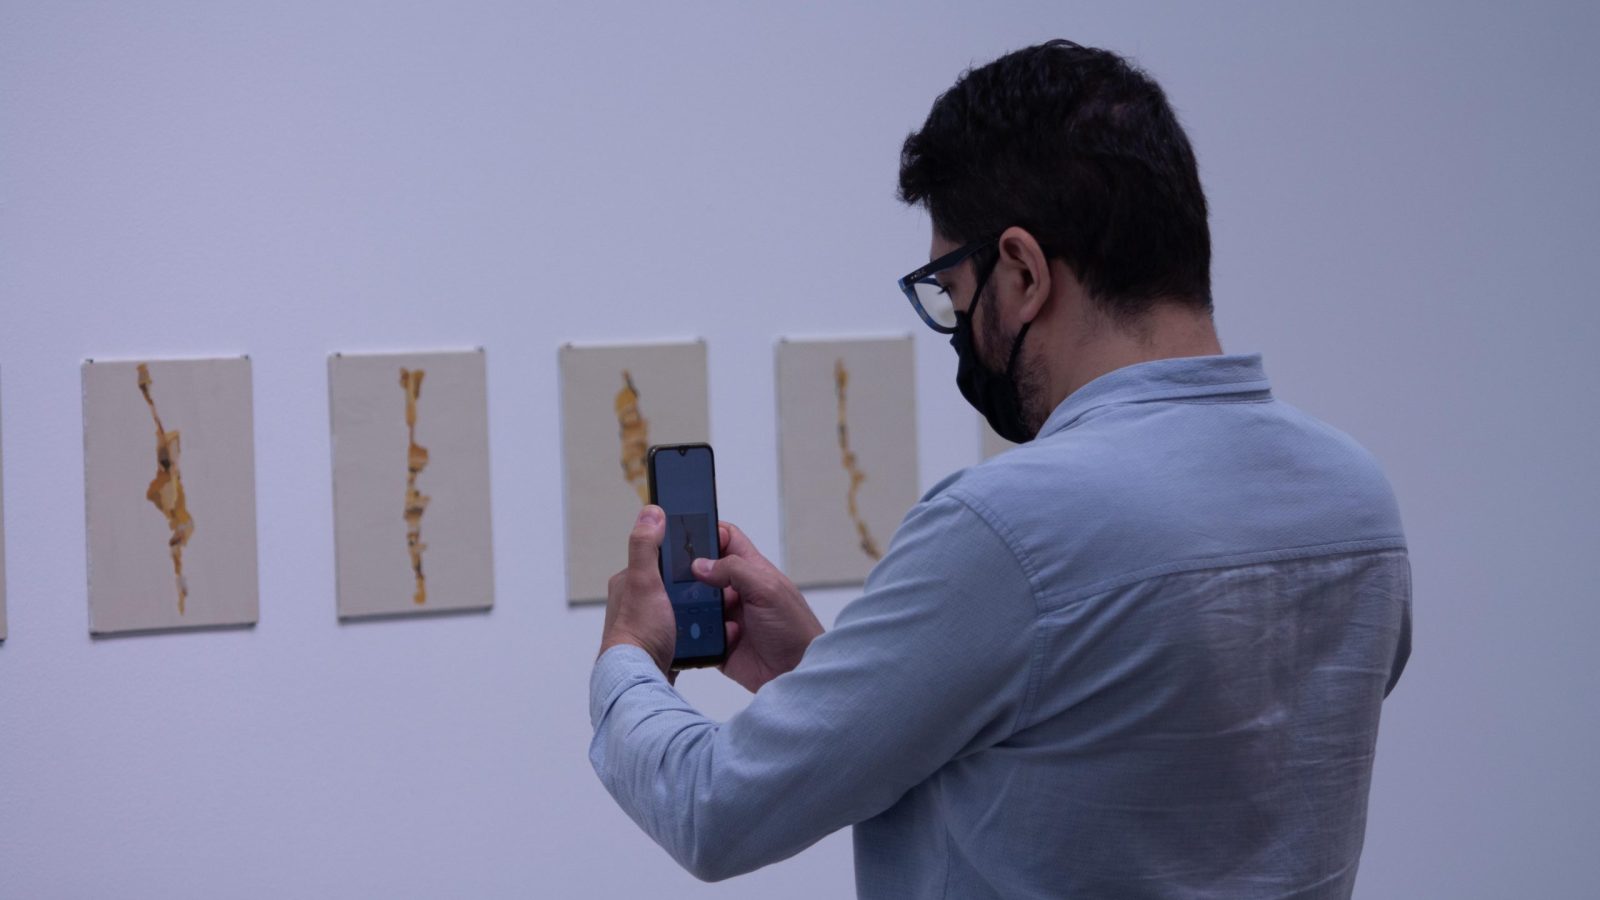 Exposiciones MAMM: hombre toma fotos a una de las piezas en Amarillos, obra de Irene Kopelman